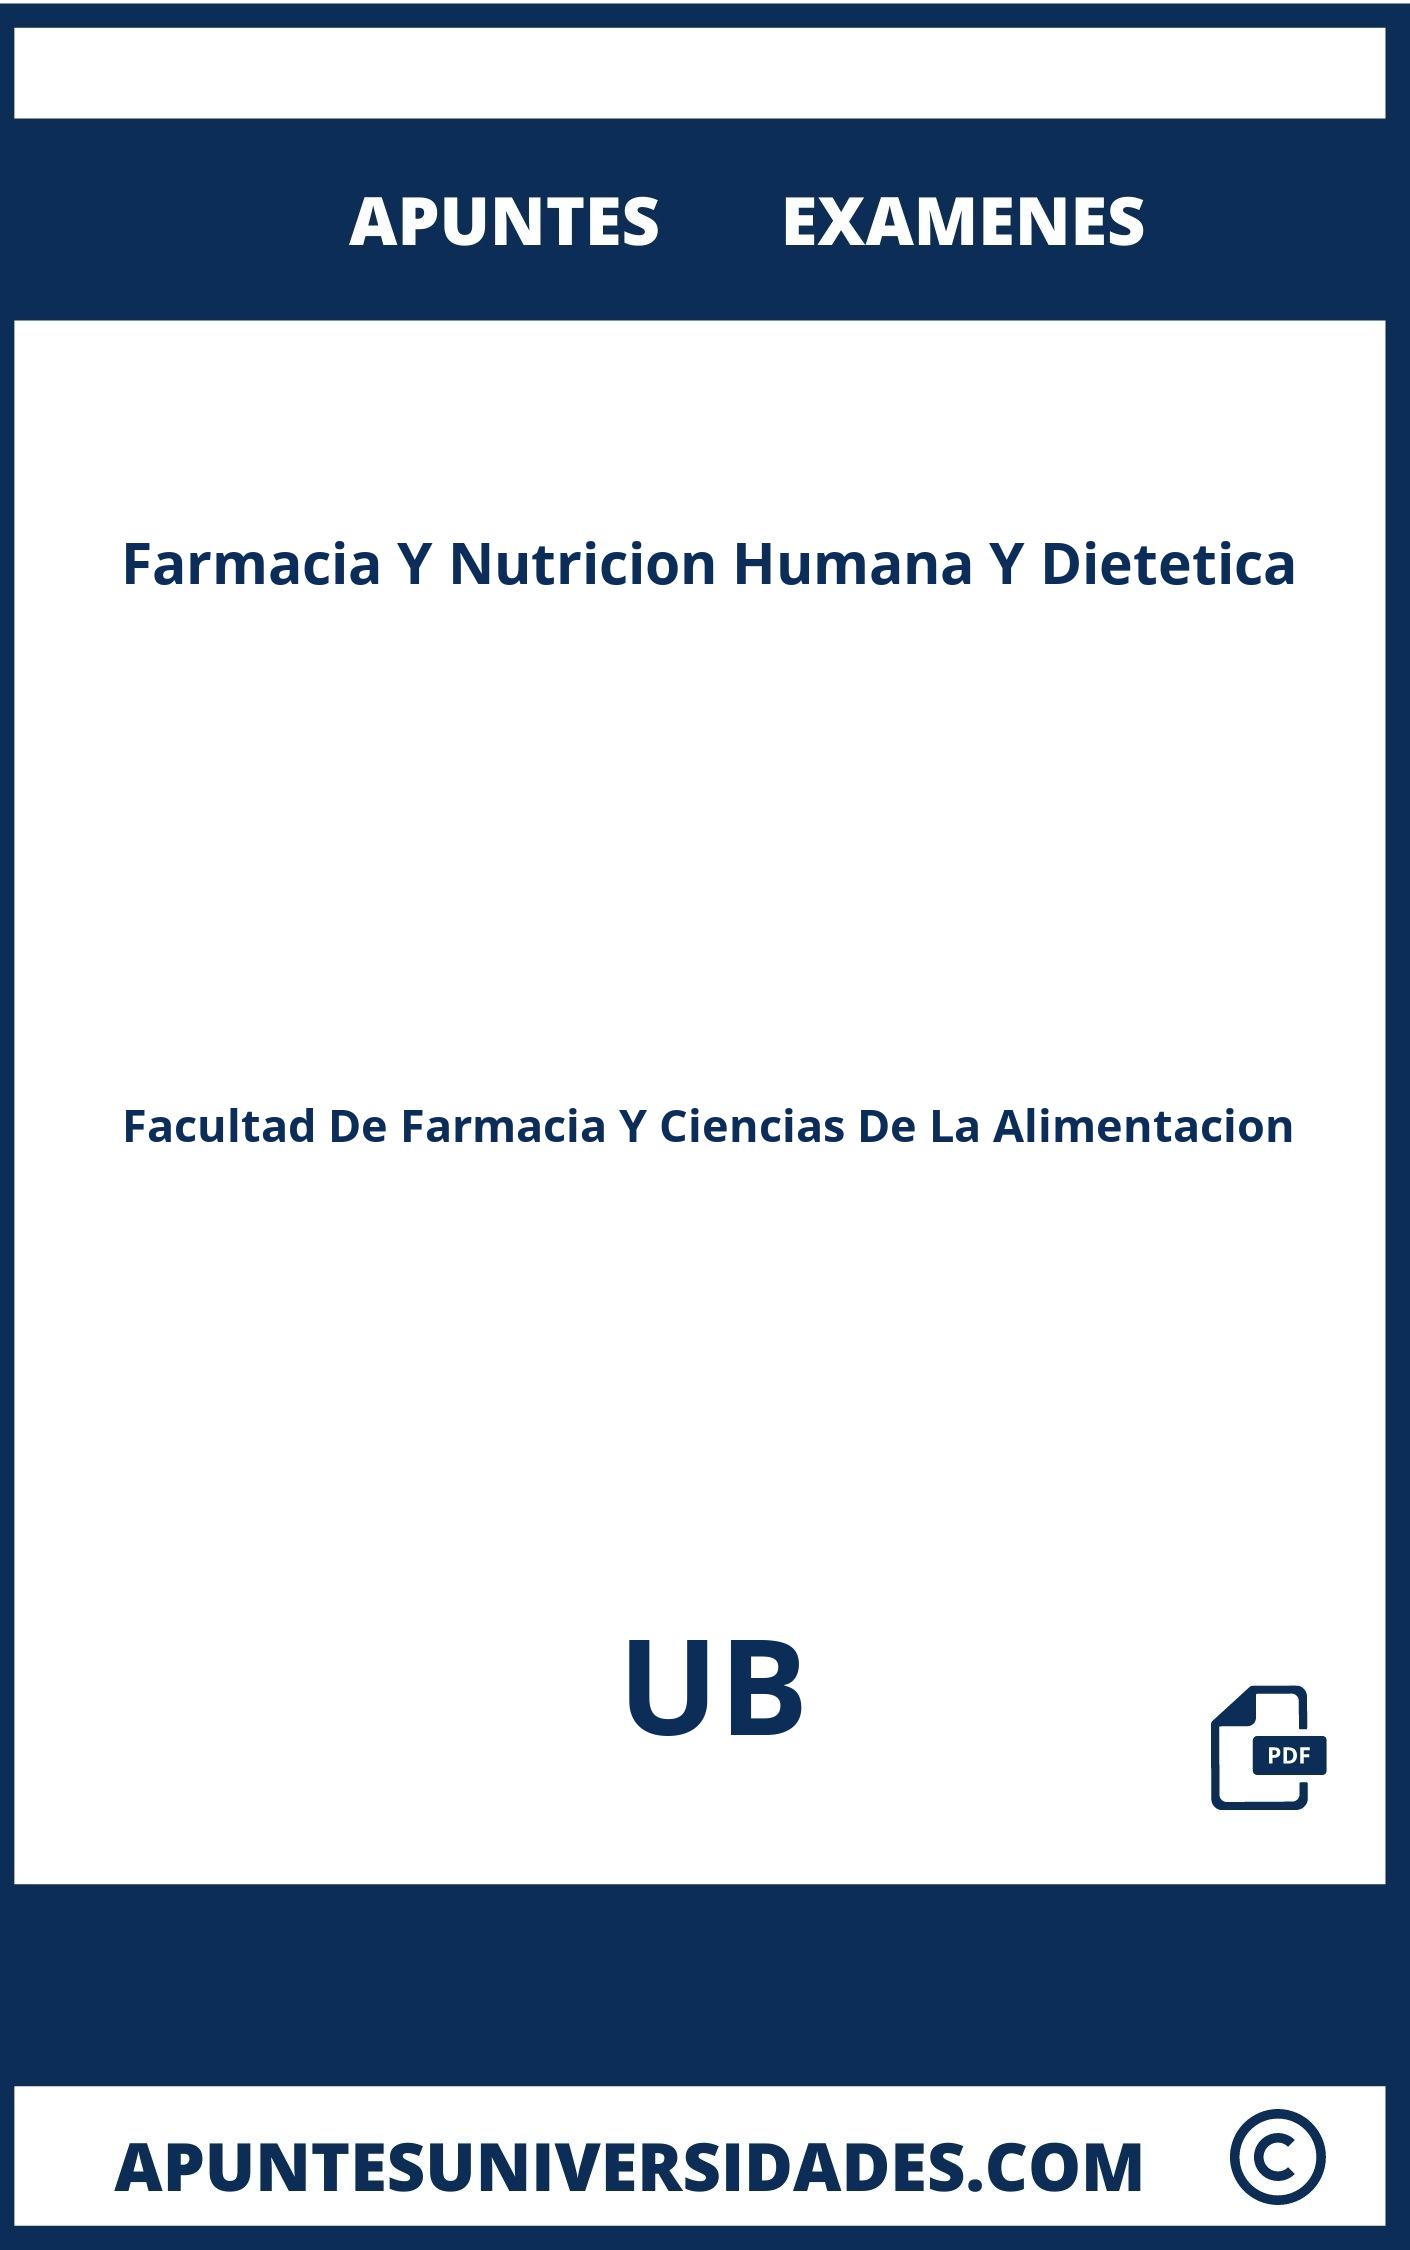 Farmacia Y Nutricion Humana Y Dietetica UB Examenes Apuntes